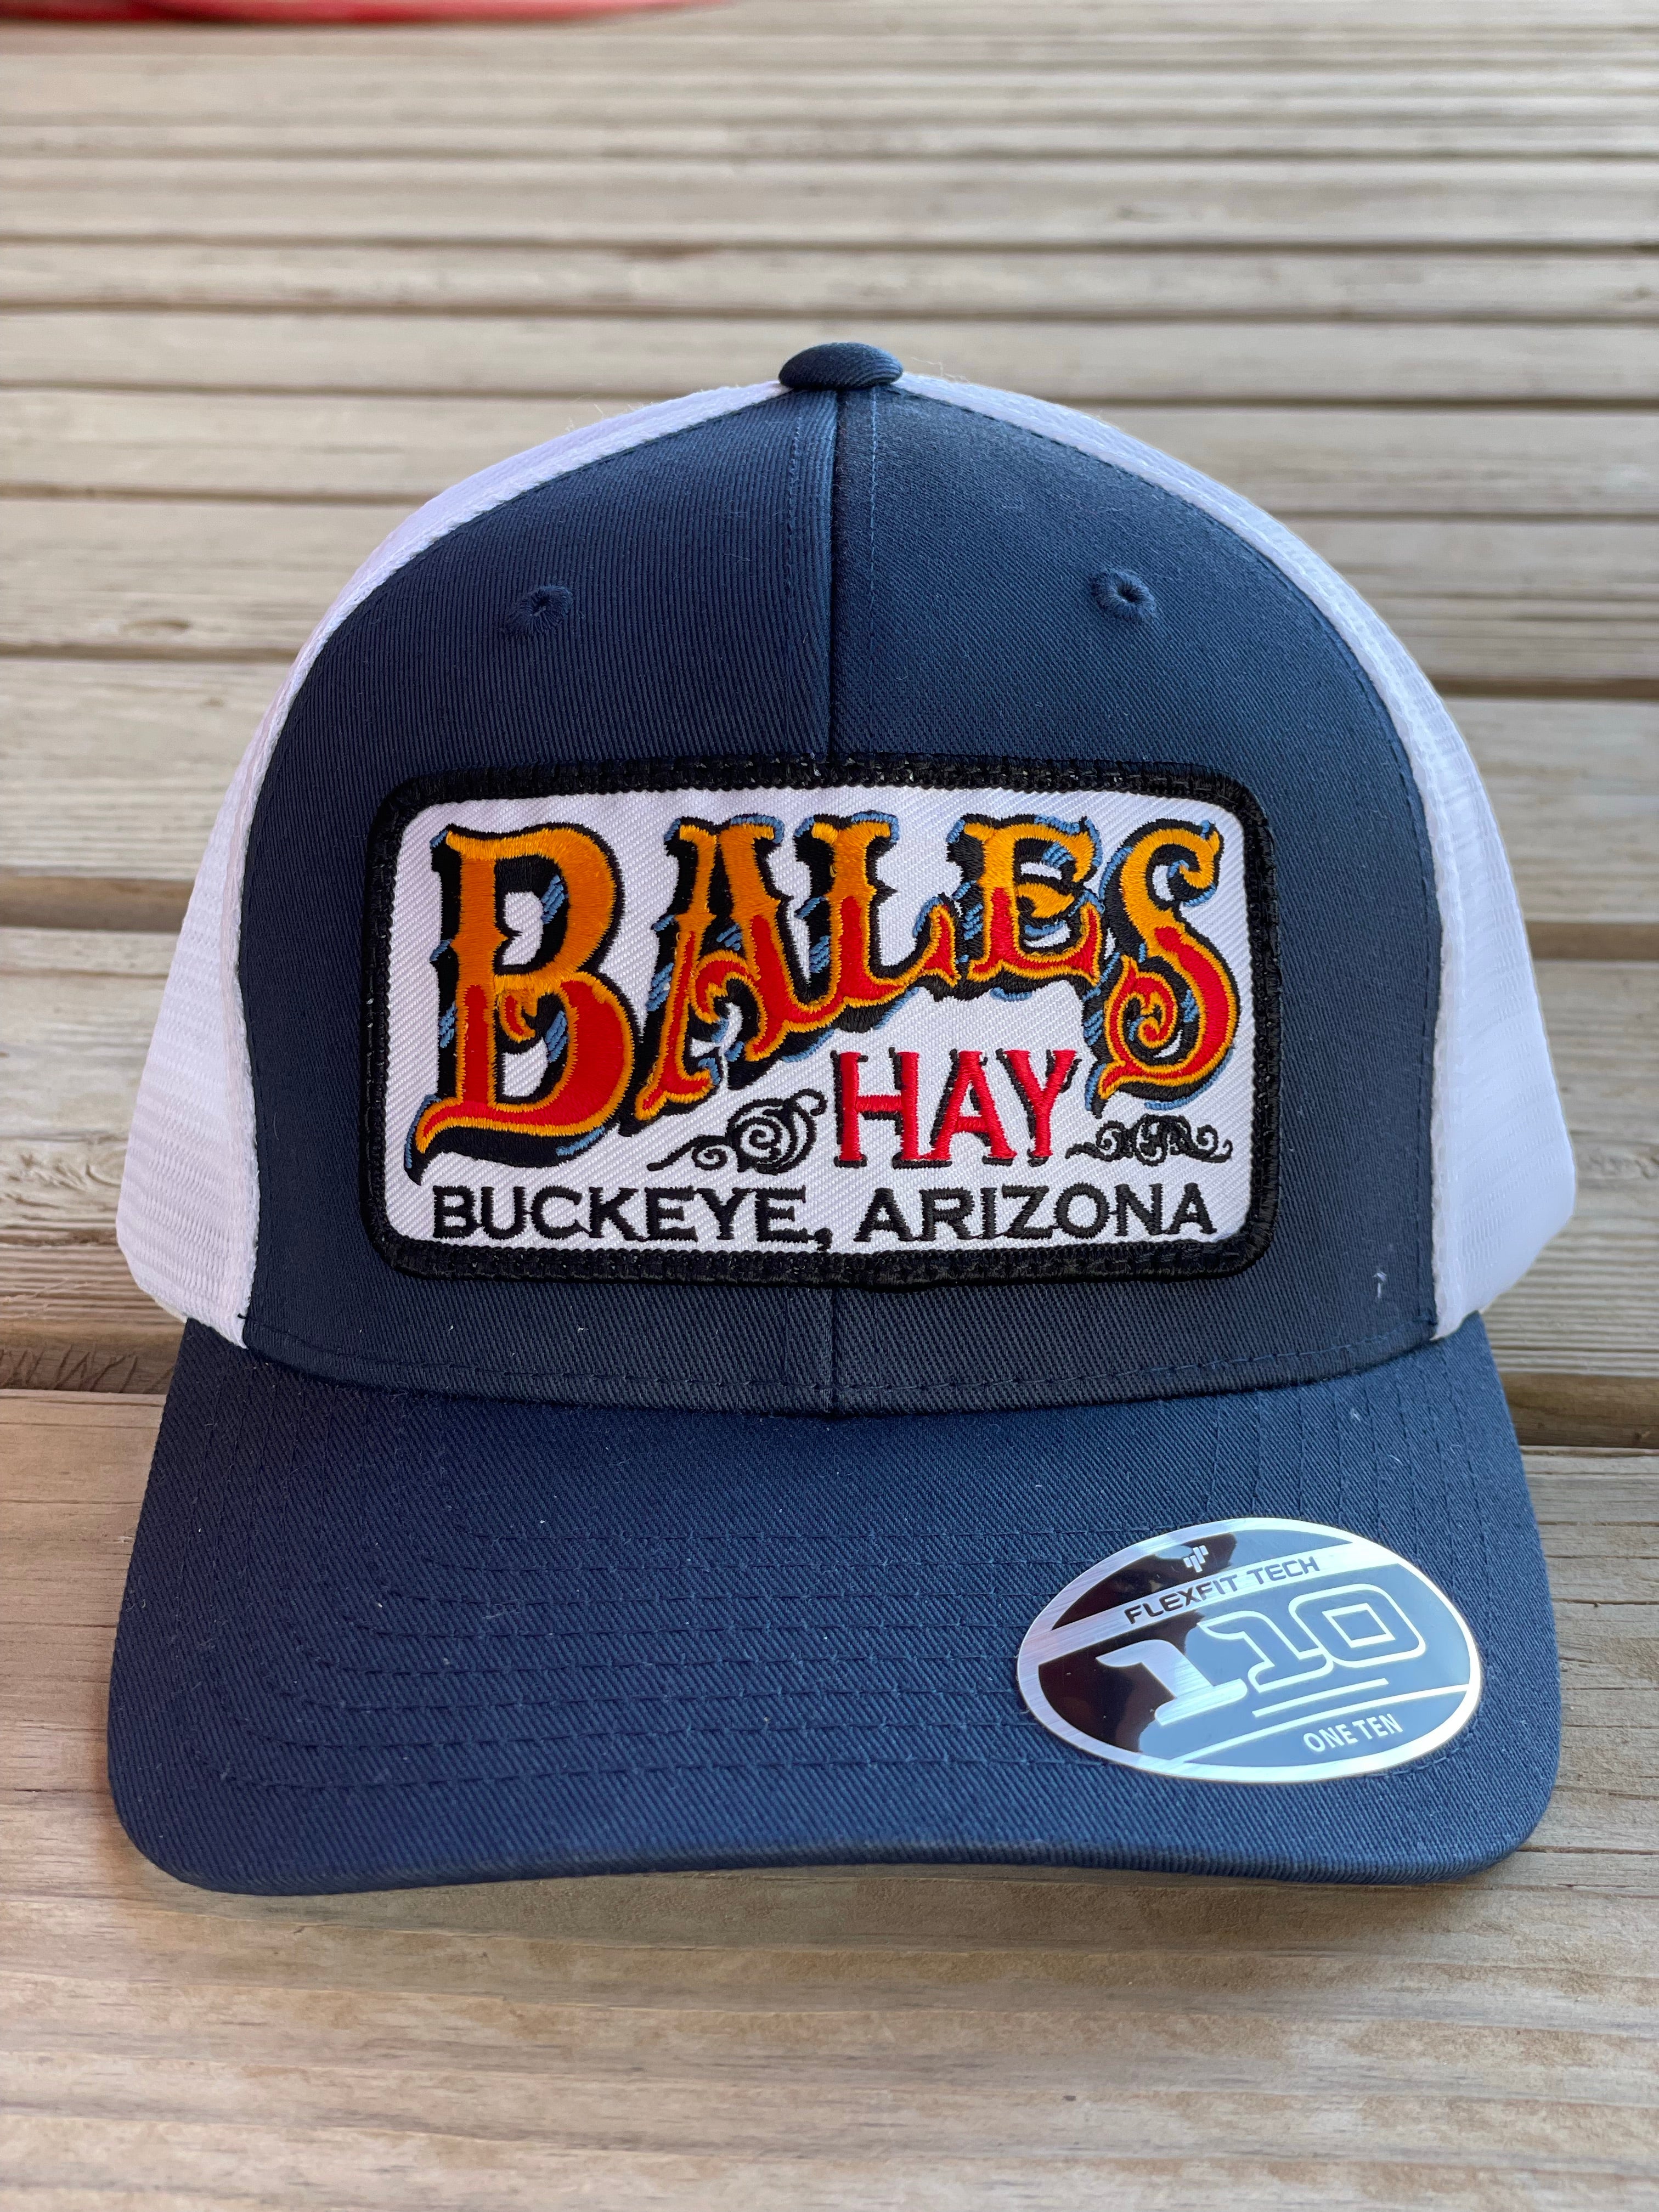 Bales Hay Logo. - Bales Hay Sales/1891 Homestead